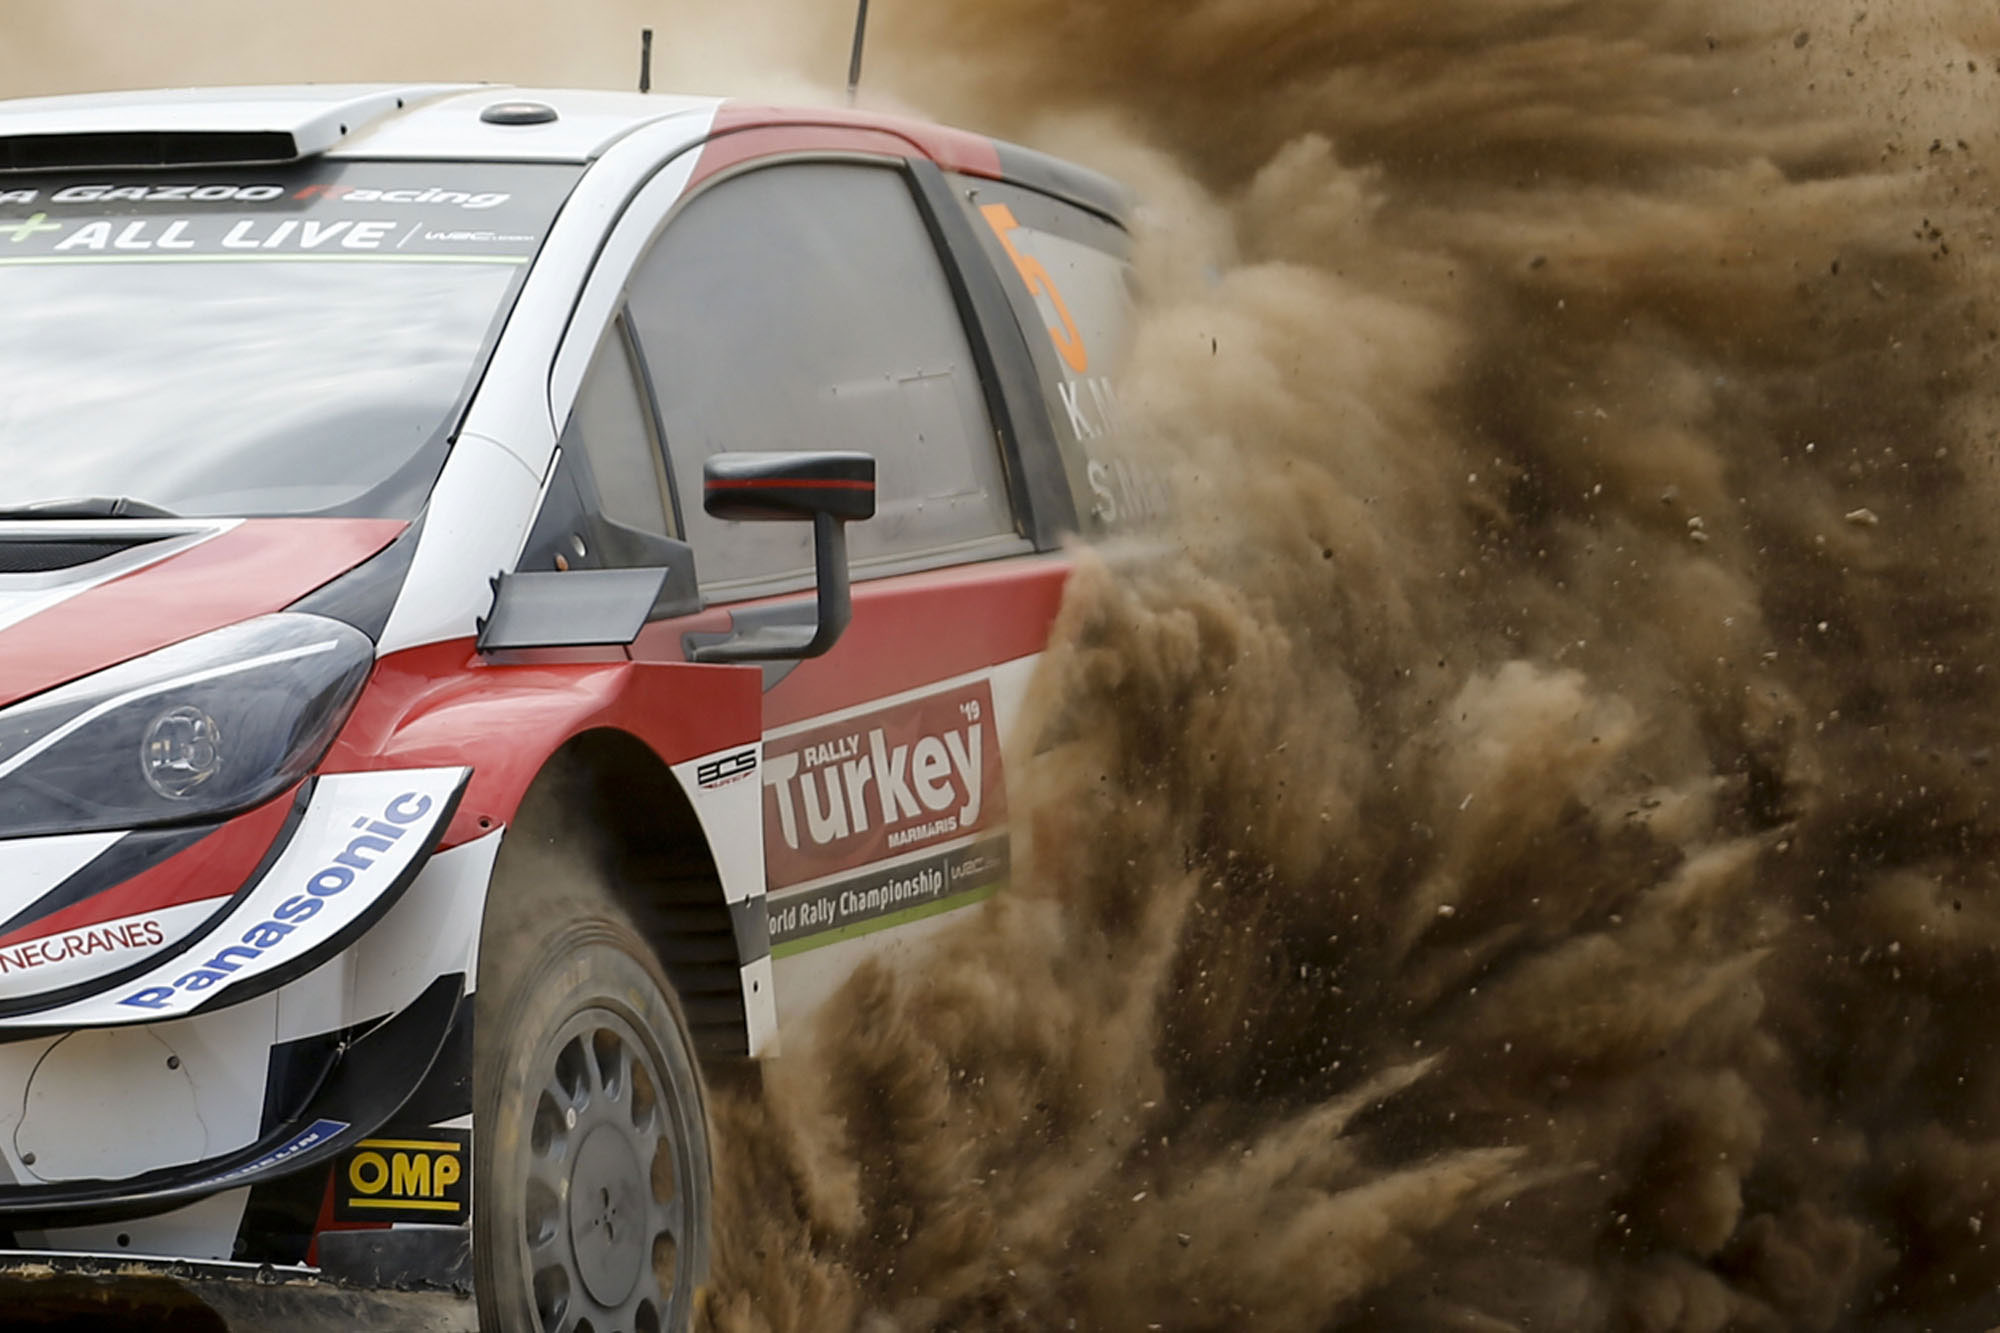 Tosfed Rally Turkey WRC